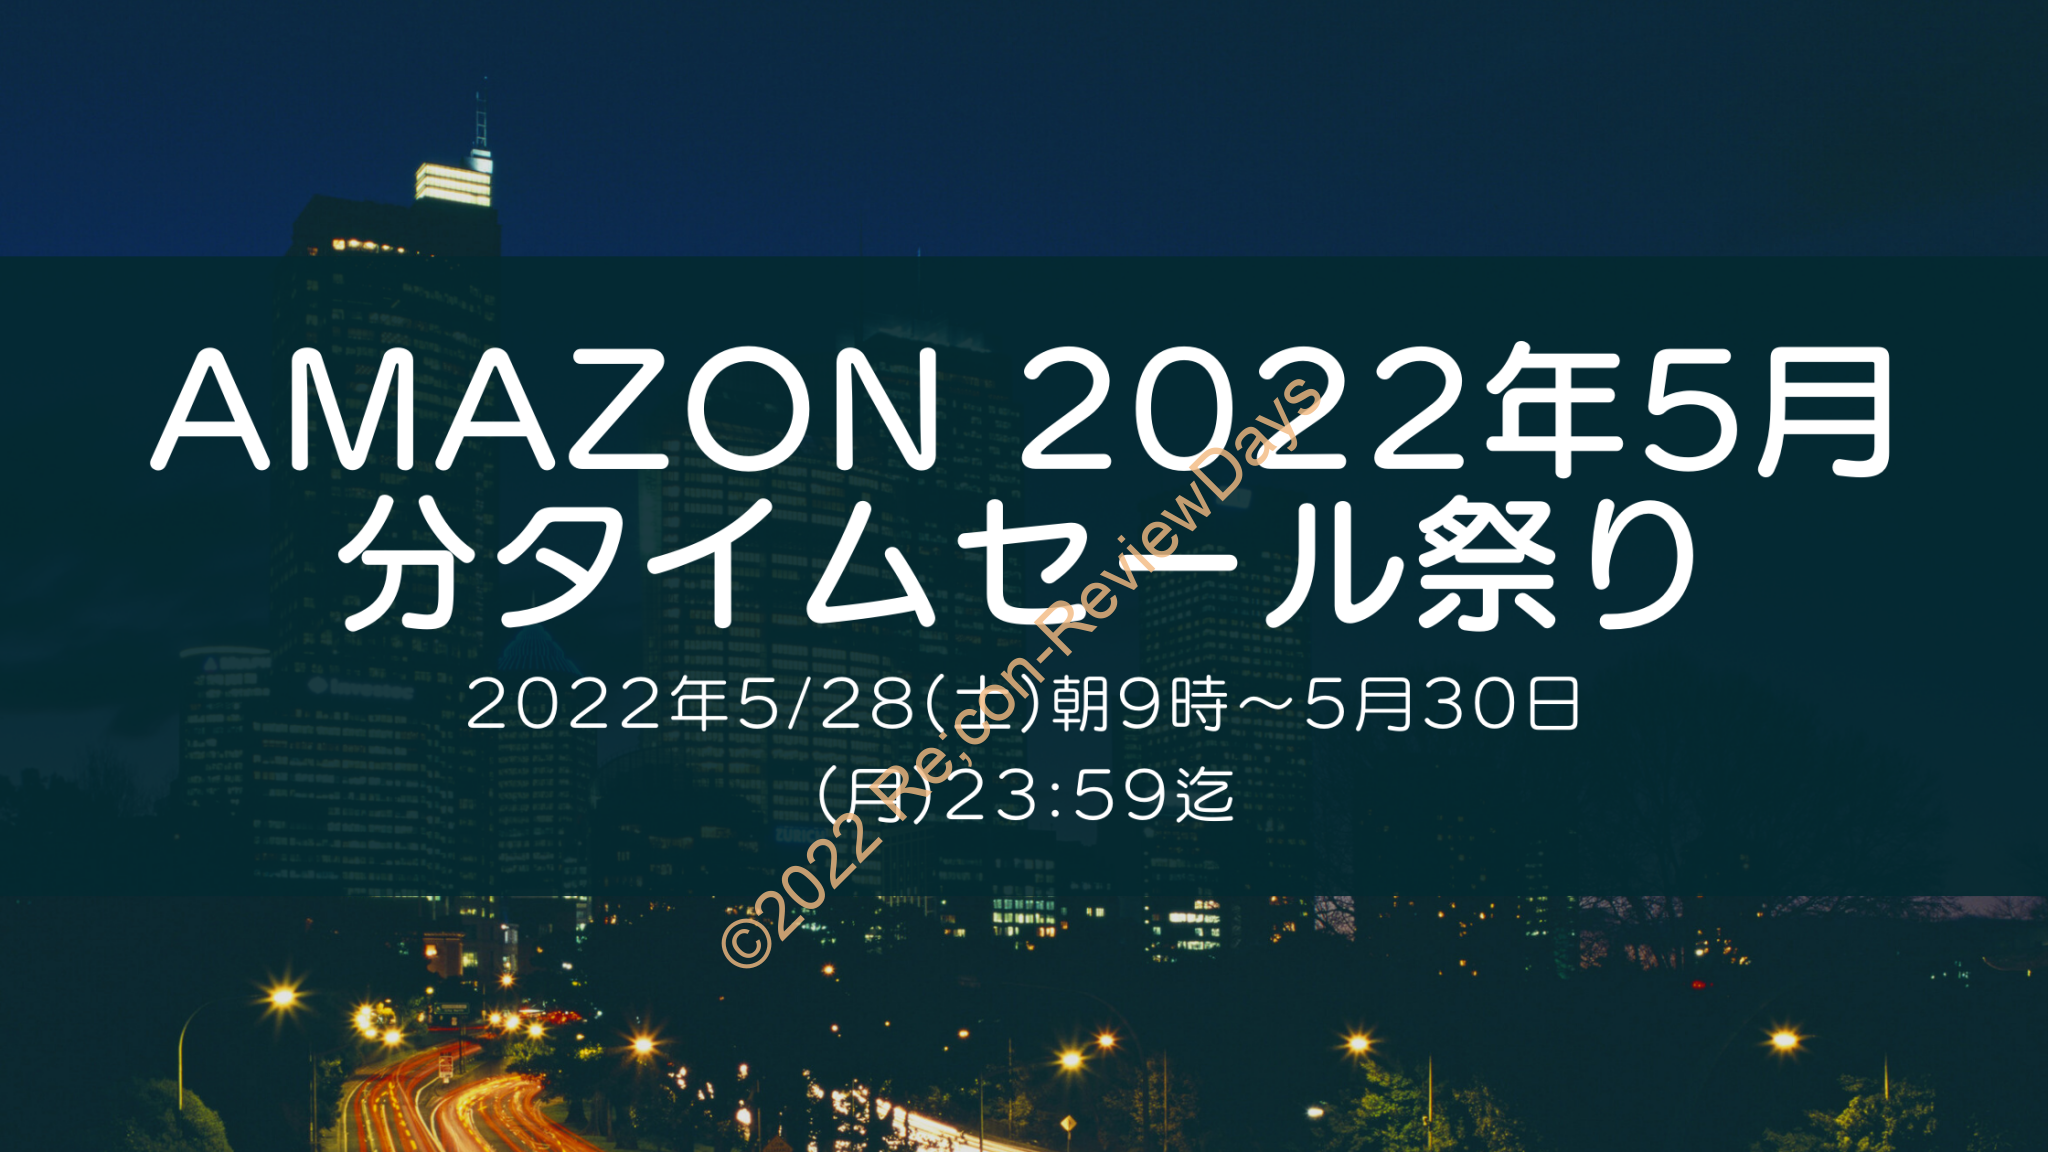 Amazonにて2022年5月実施分の「63時間のビッグセール タイムセール祭り」を5月28日(土)朝9時から約3日間開催 #Amazon #アマゾン #セール #特価 #タイムセール #タイムセール祭り